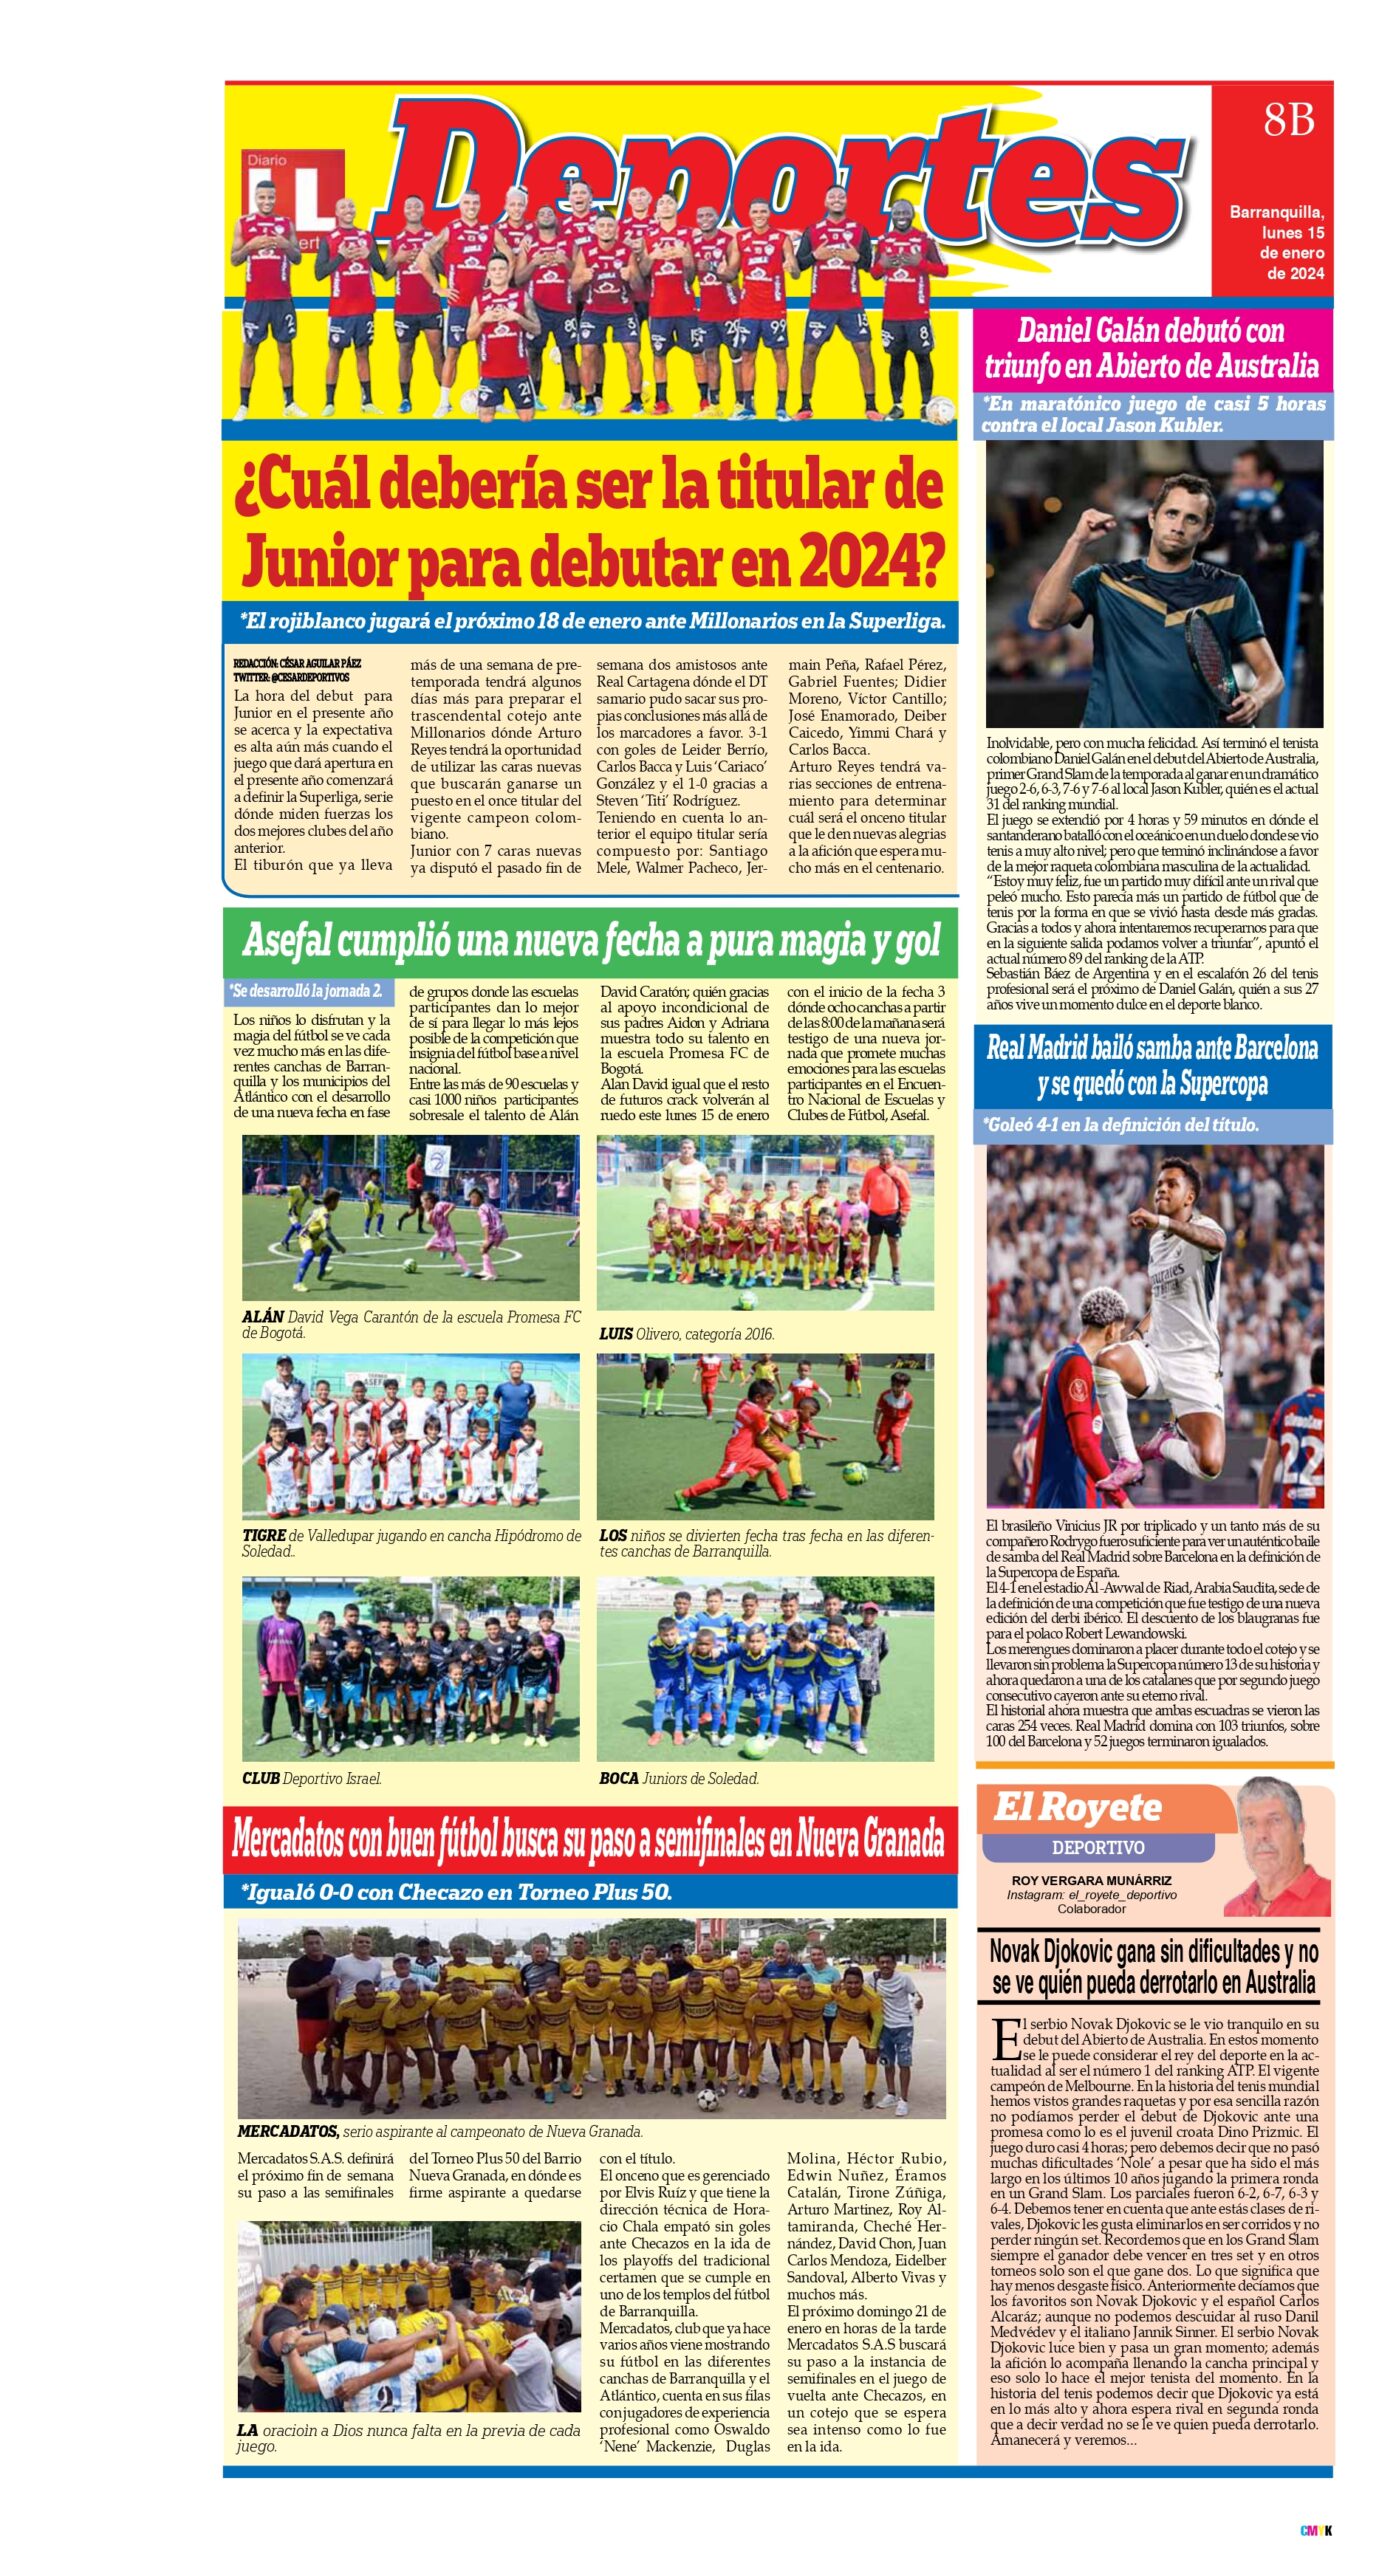 Mercadatos con buen fútbol busca su paso a semifinales en Nueva Granada. Fuente: Diario La Libertad (Ene/24).